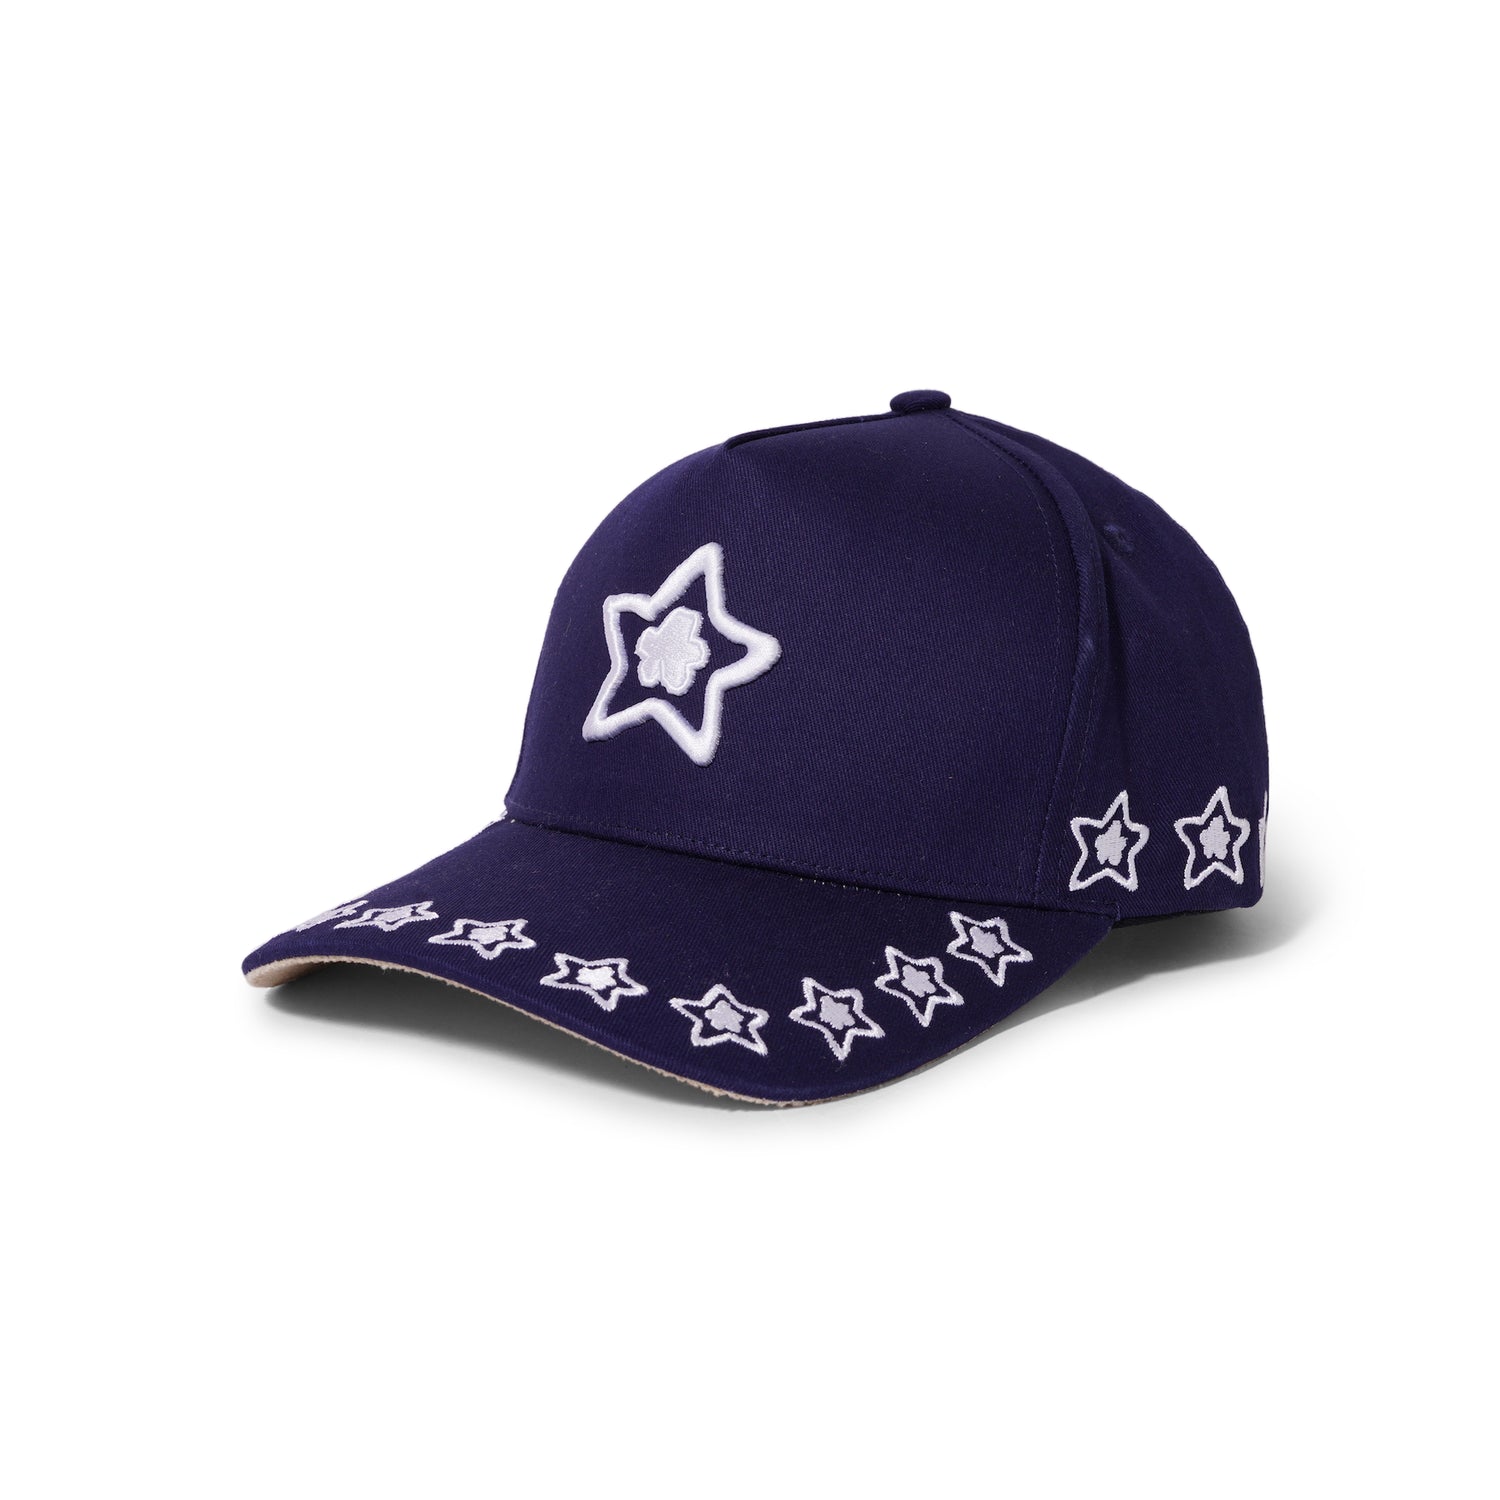 Team Hat, Navy